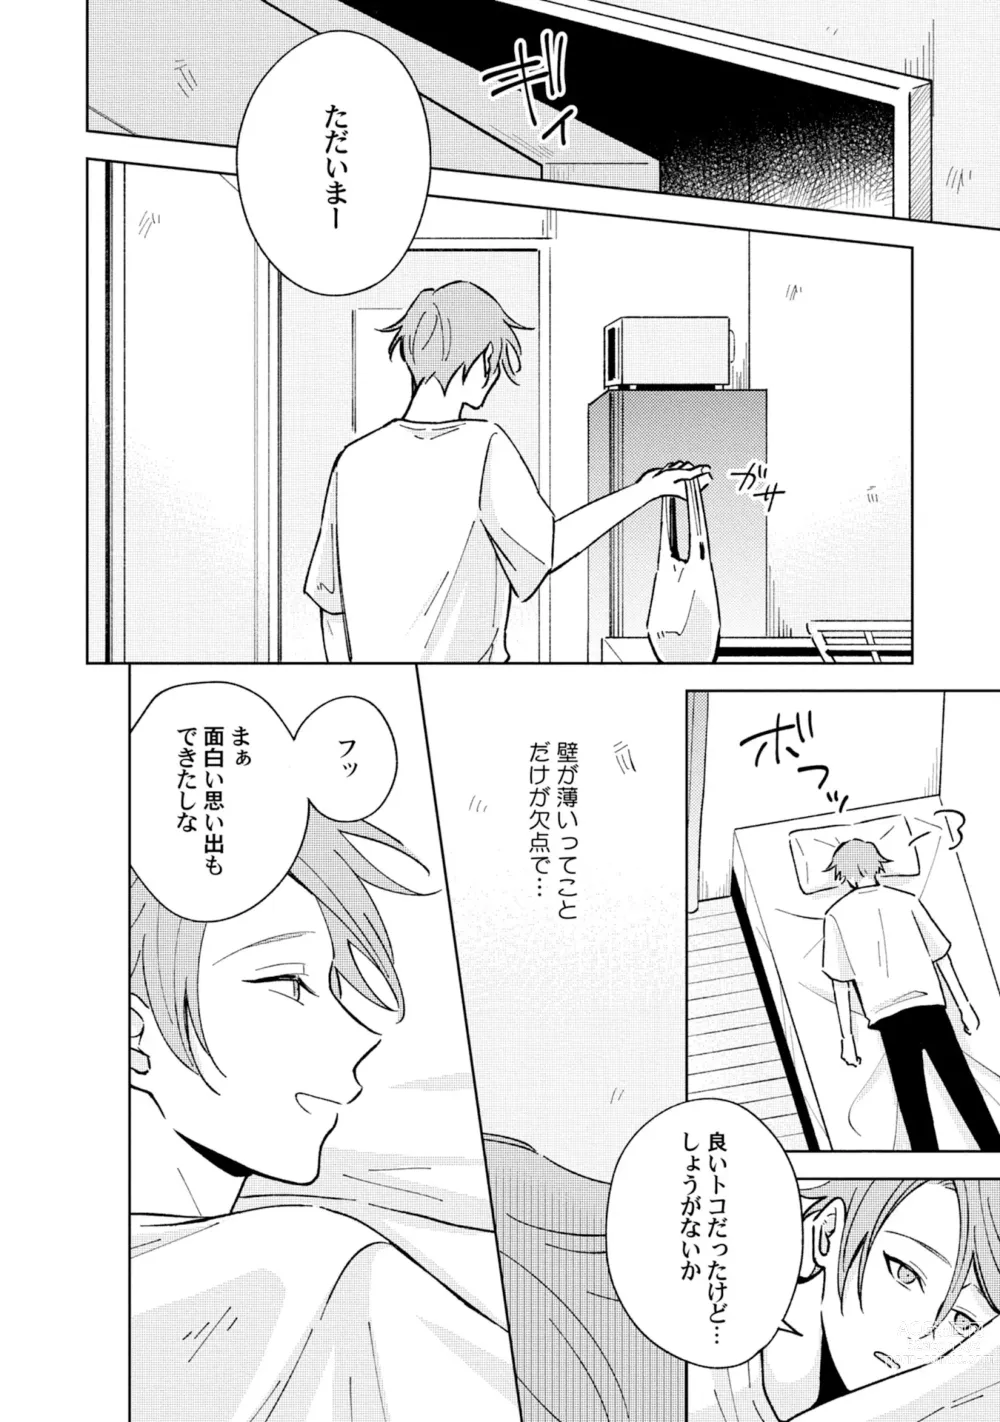 Page 14 of manga Toho 3-byou no Trouble Love Room 4